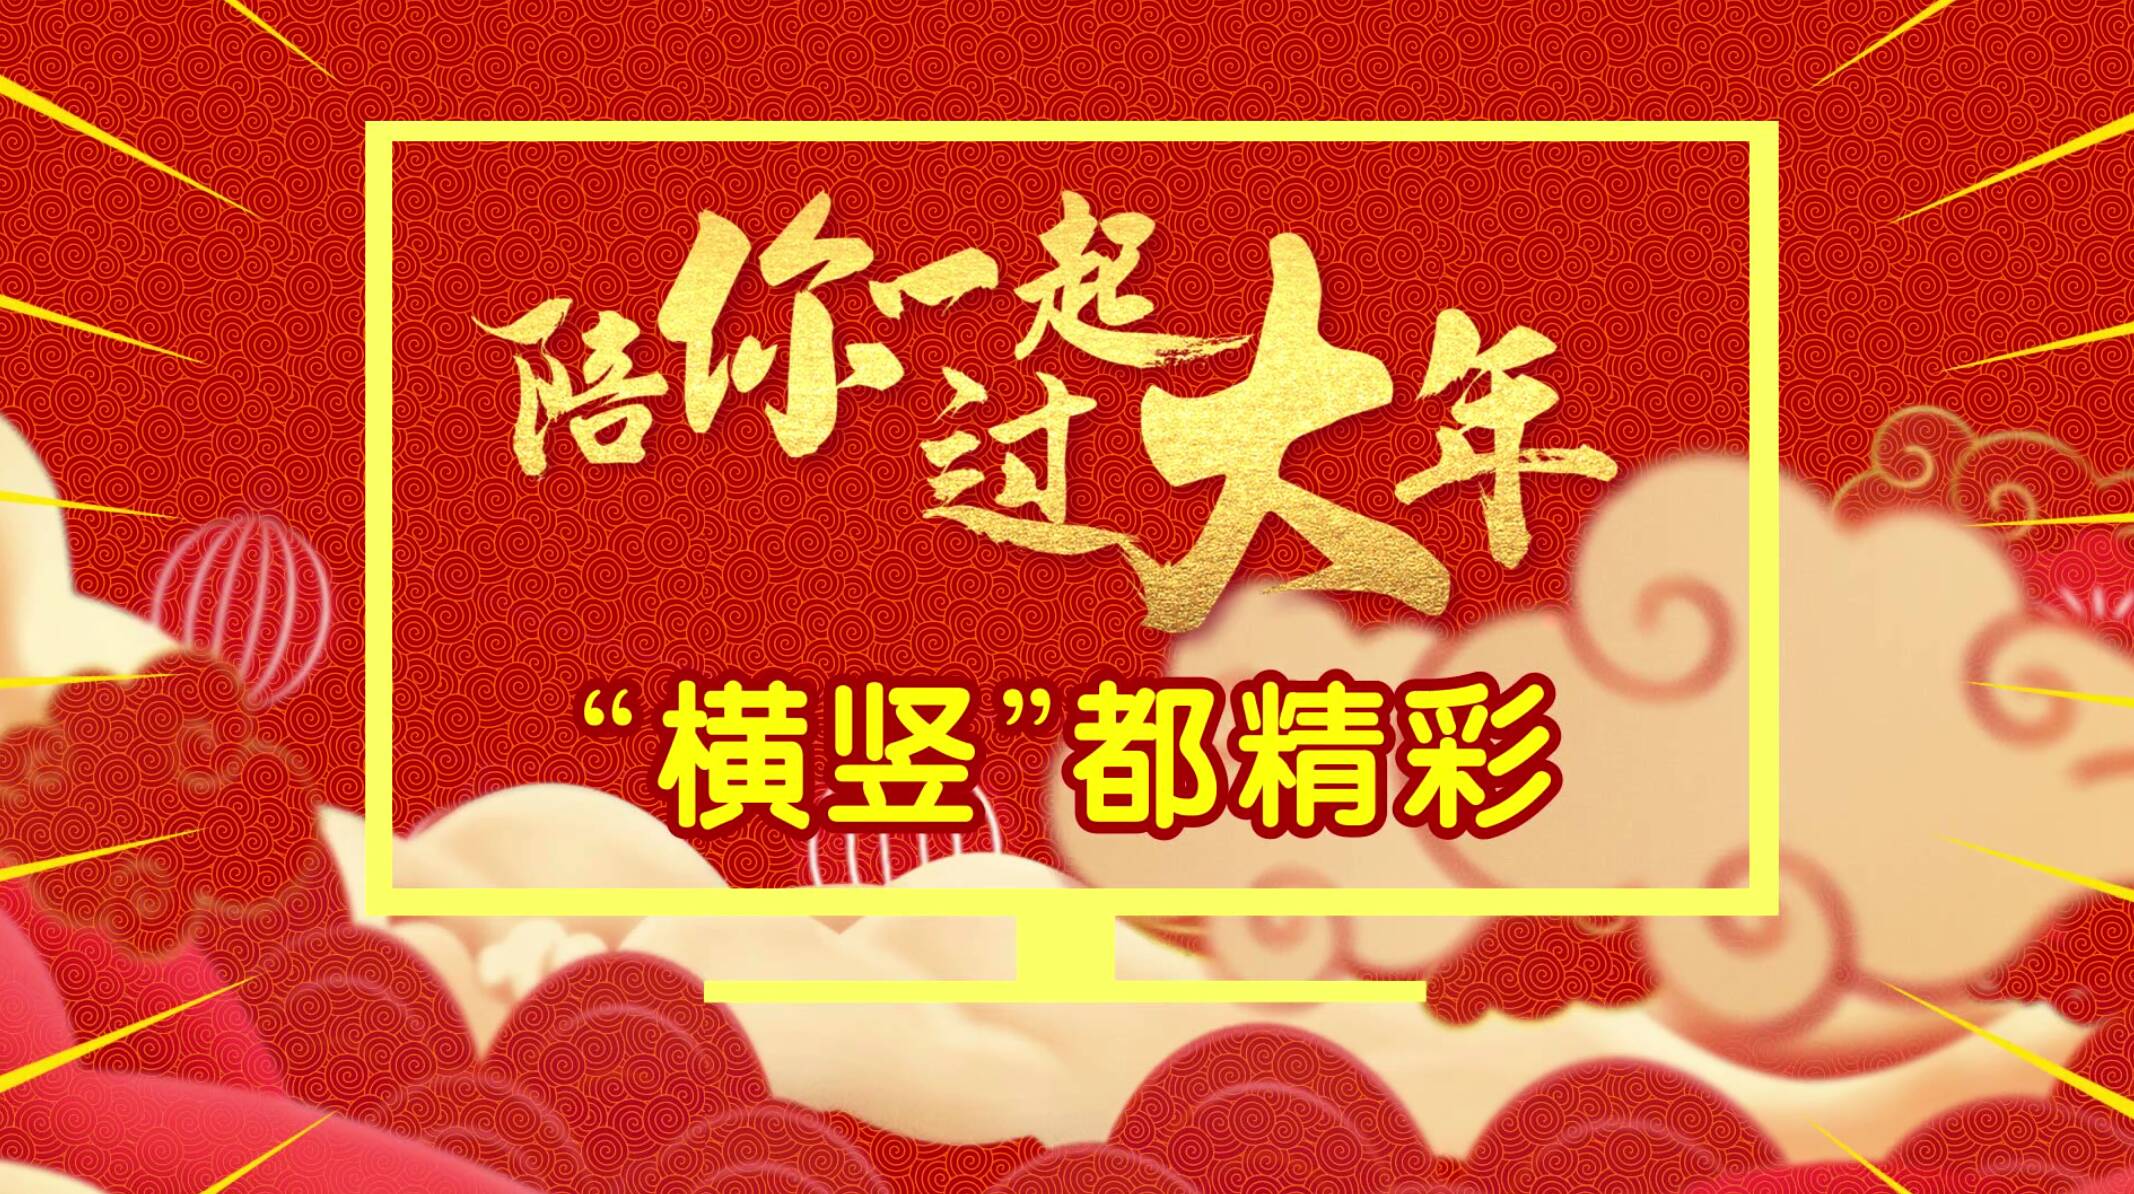 山东广播电视台齐鲁频道邀你“连麦”过大年 春节特别节目招募嘉宾